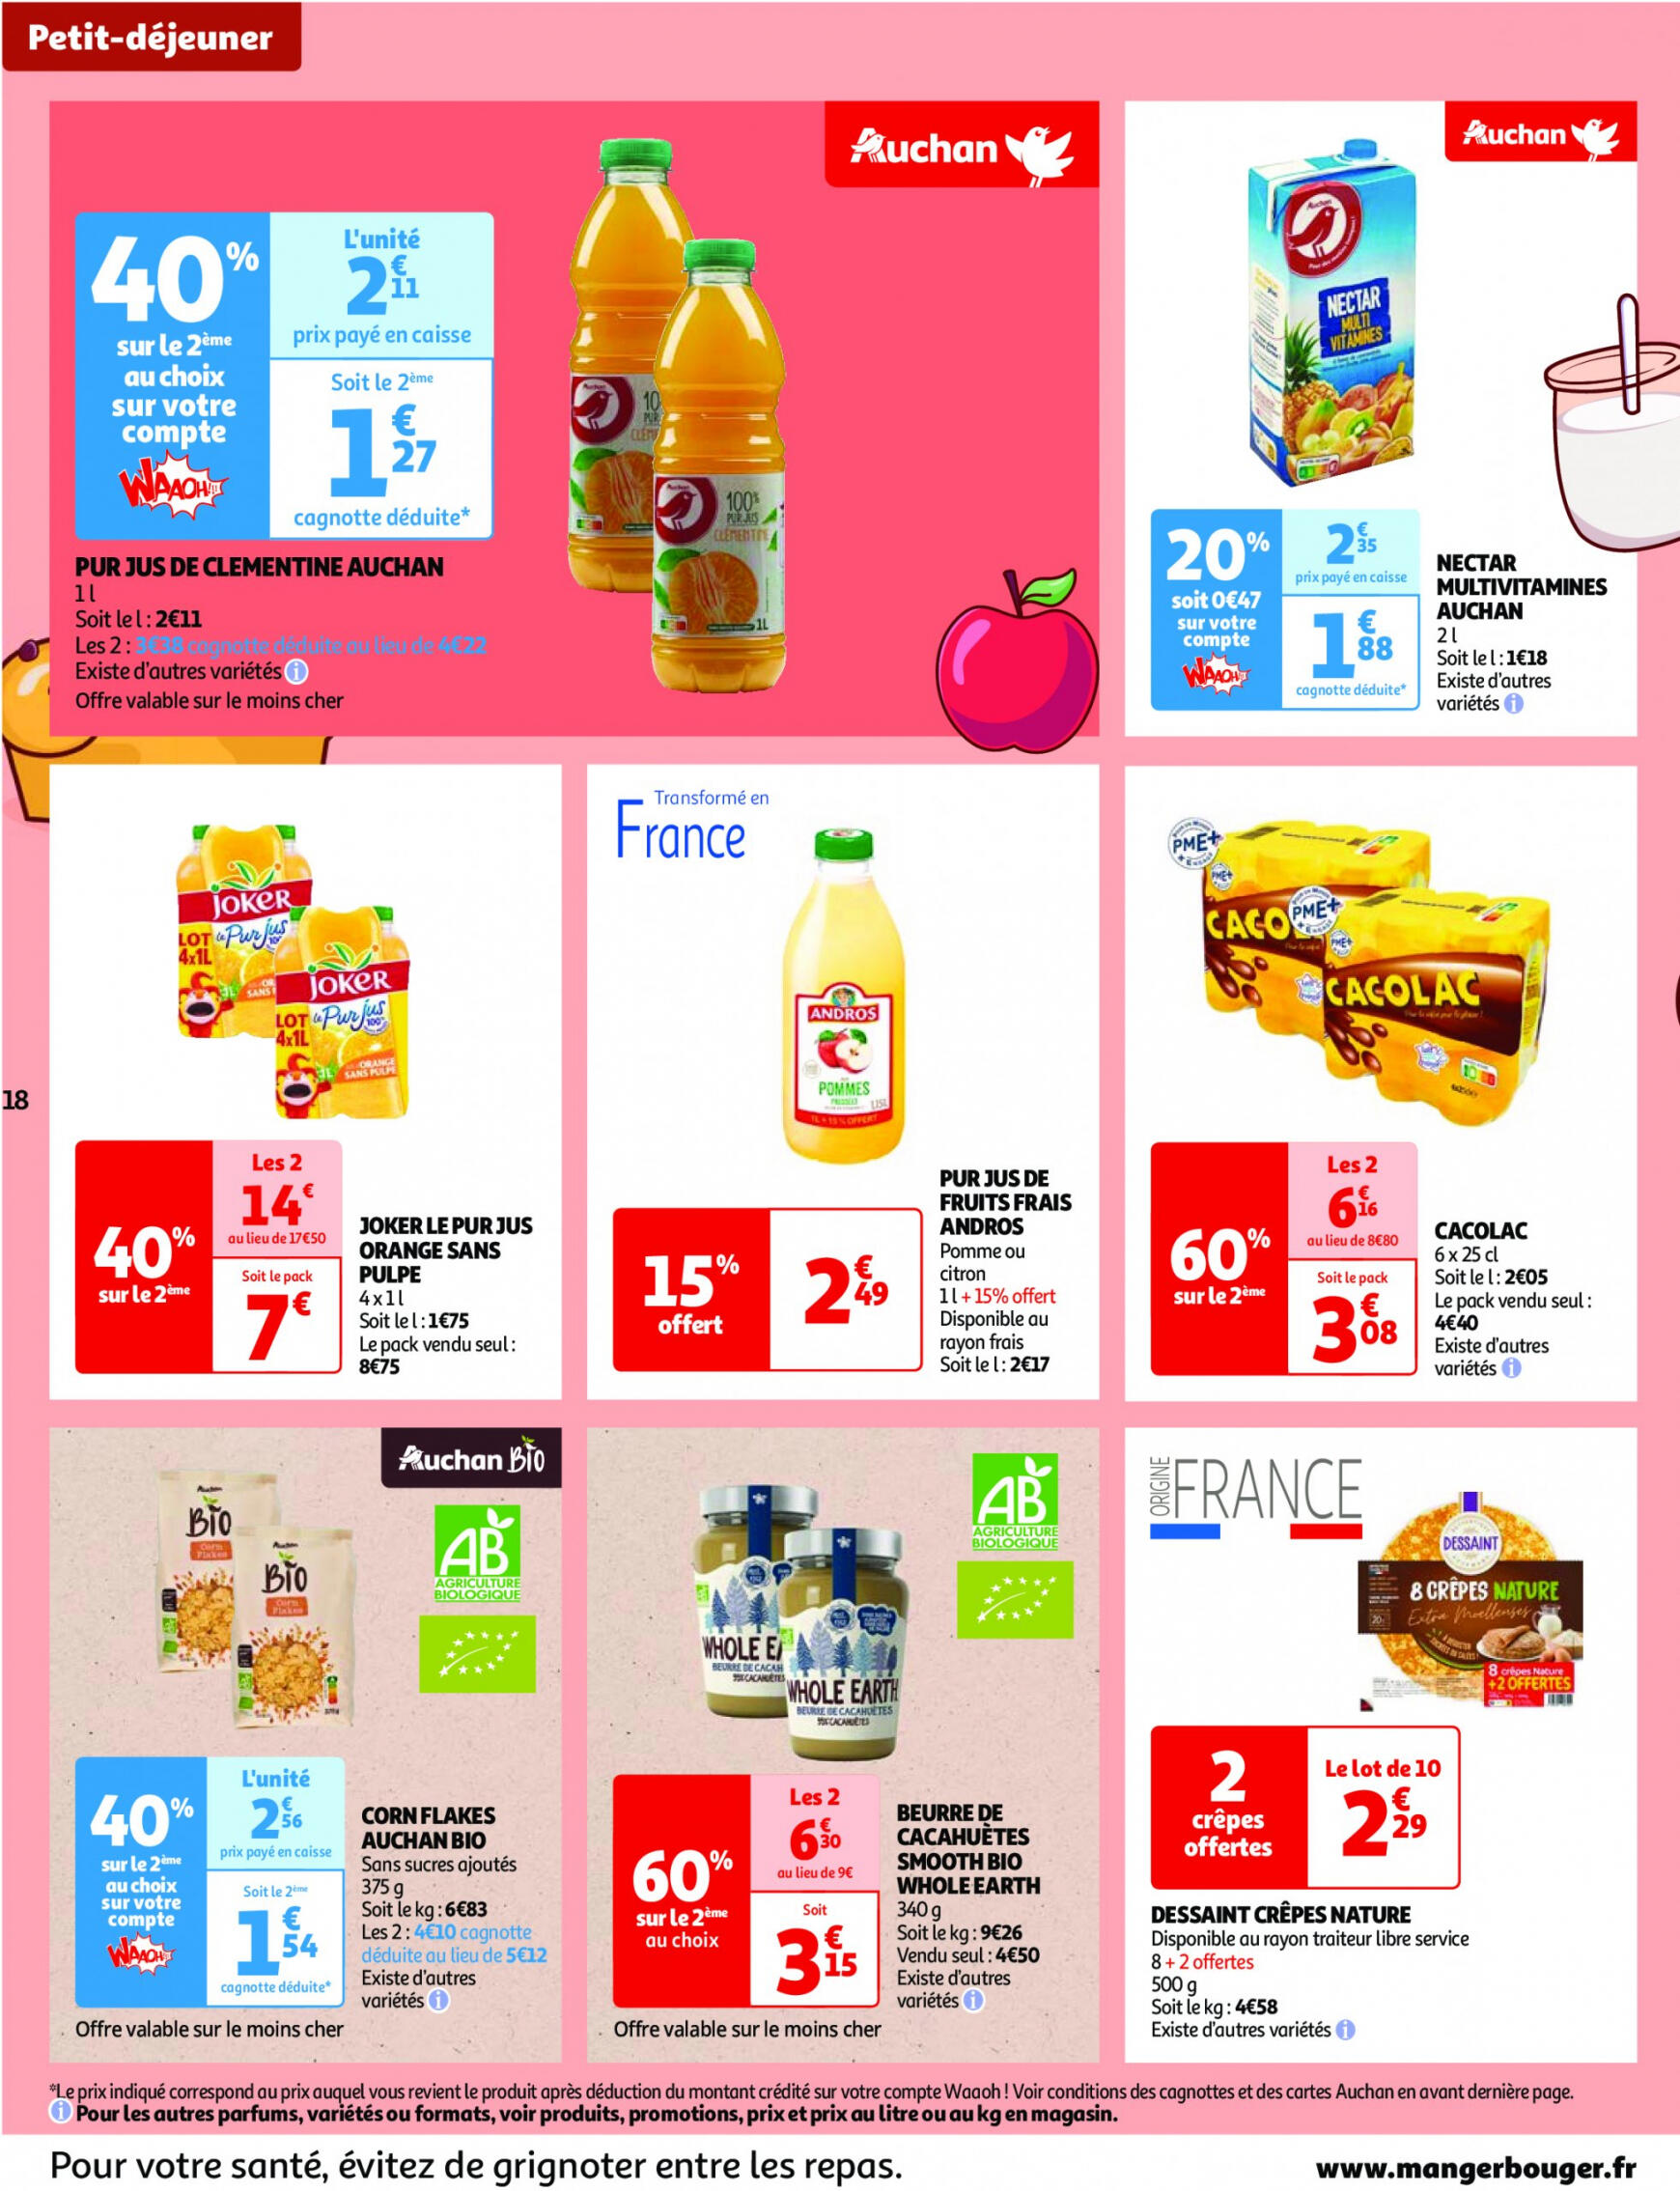 auchan - Prospectus Auchan actuel 14.05. - 21.05. - page: 18